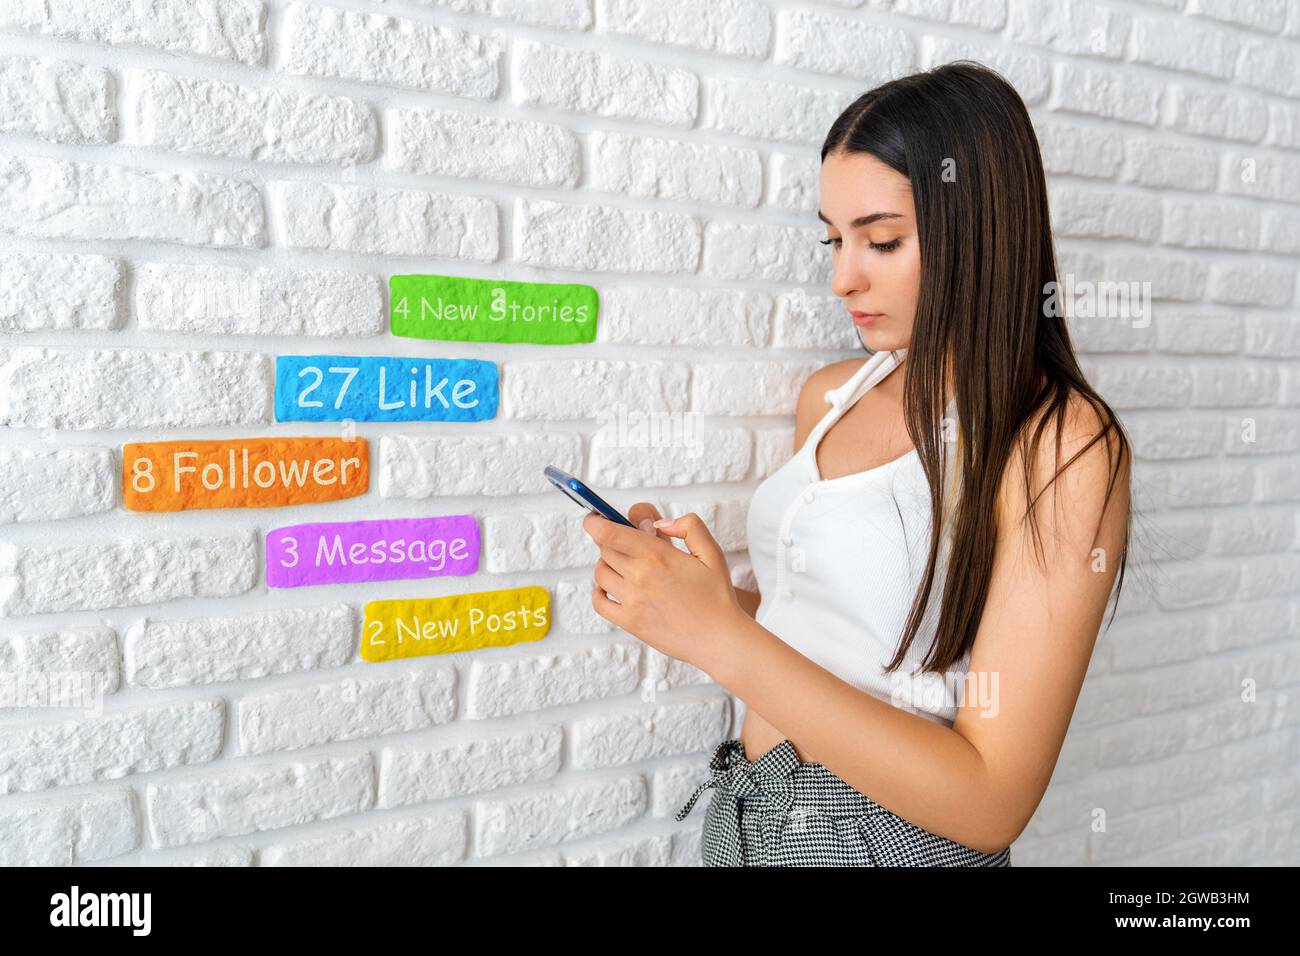 Une jeune femme est debout devant un mur de briques blanches et vérifie les médias sociaux avec son smartphone. Photo de haute qualité Banque D'Images